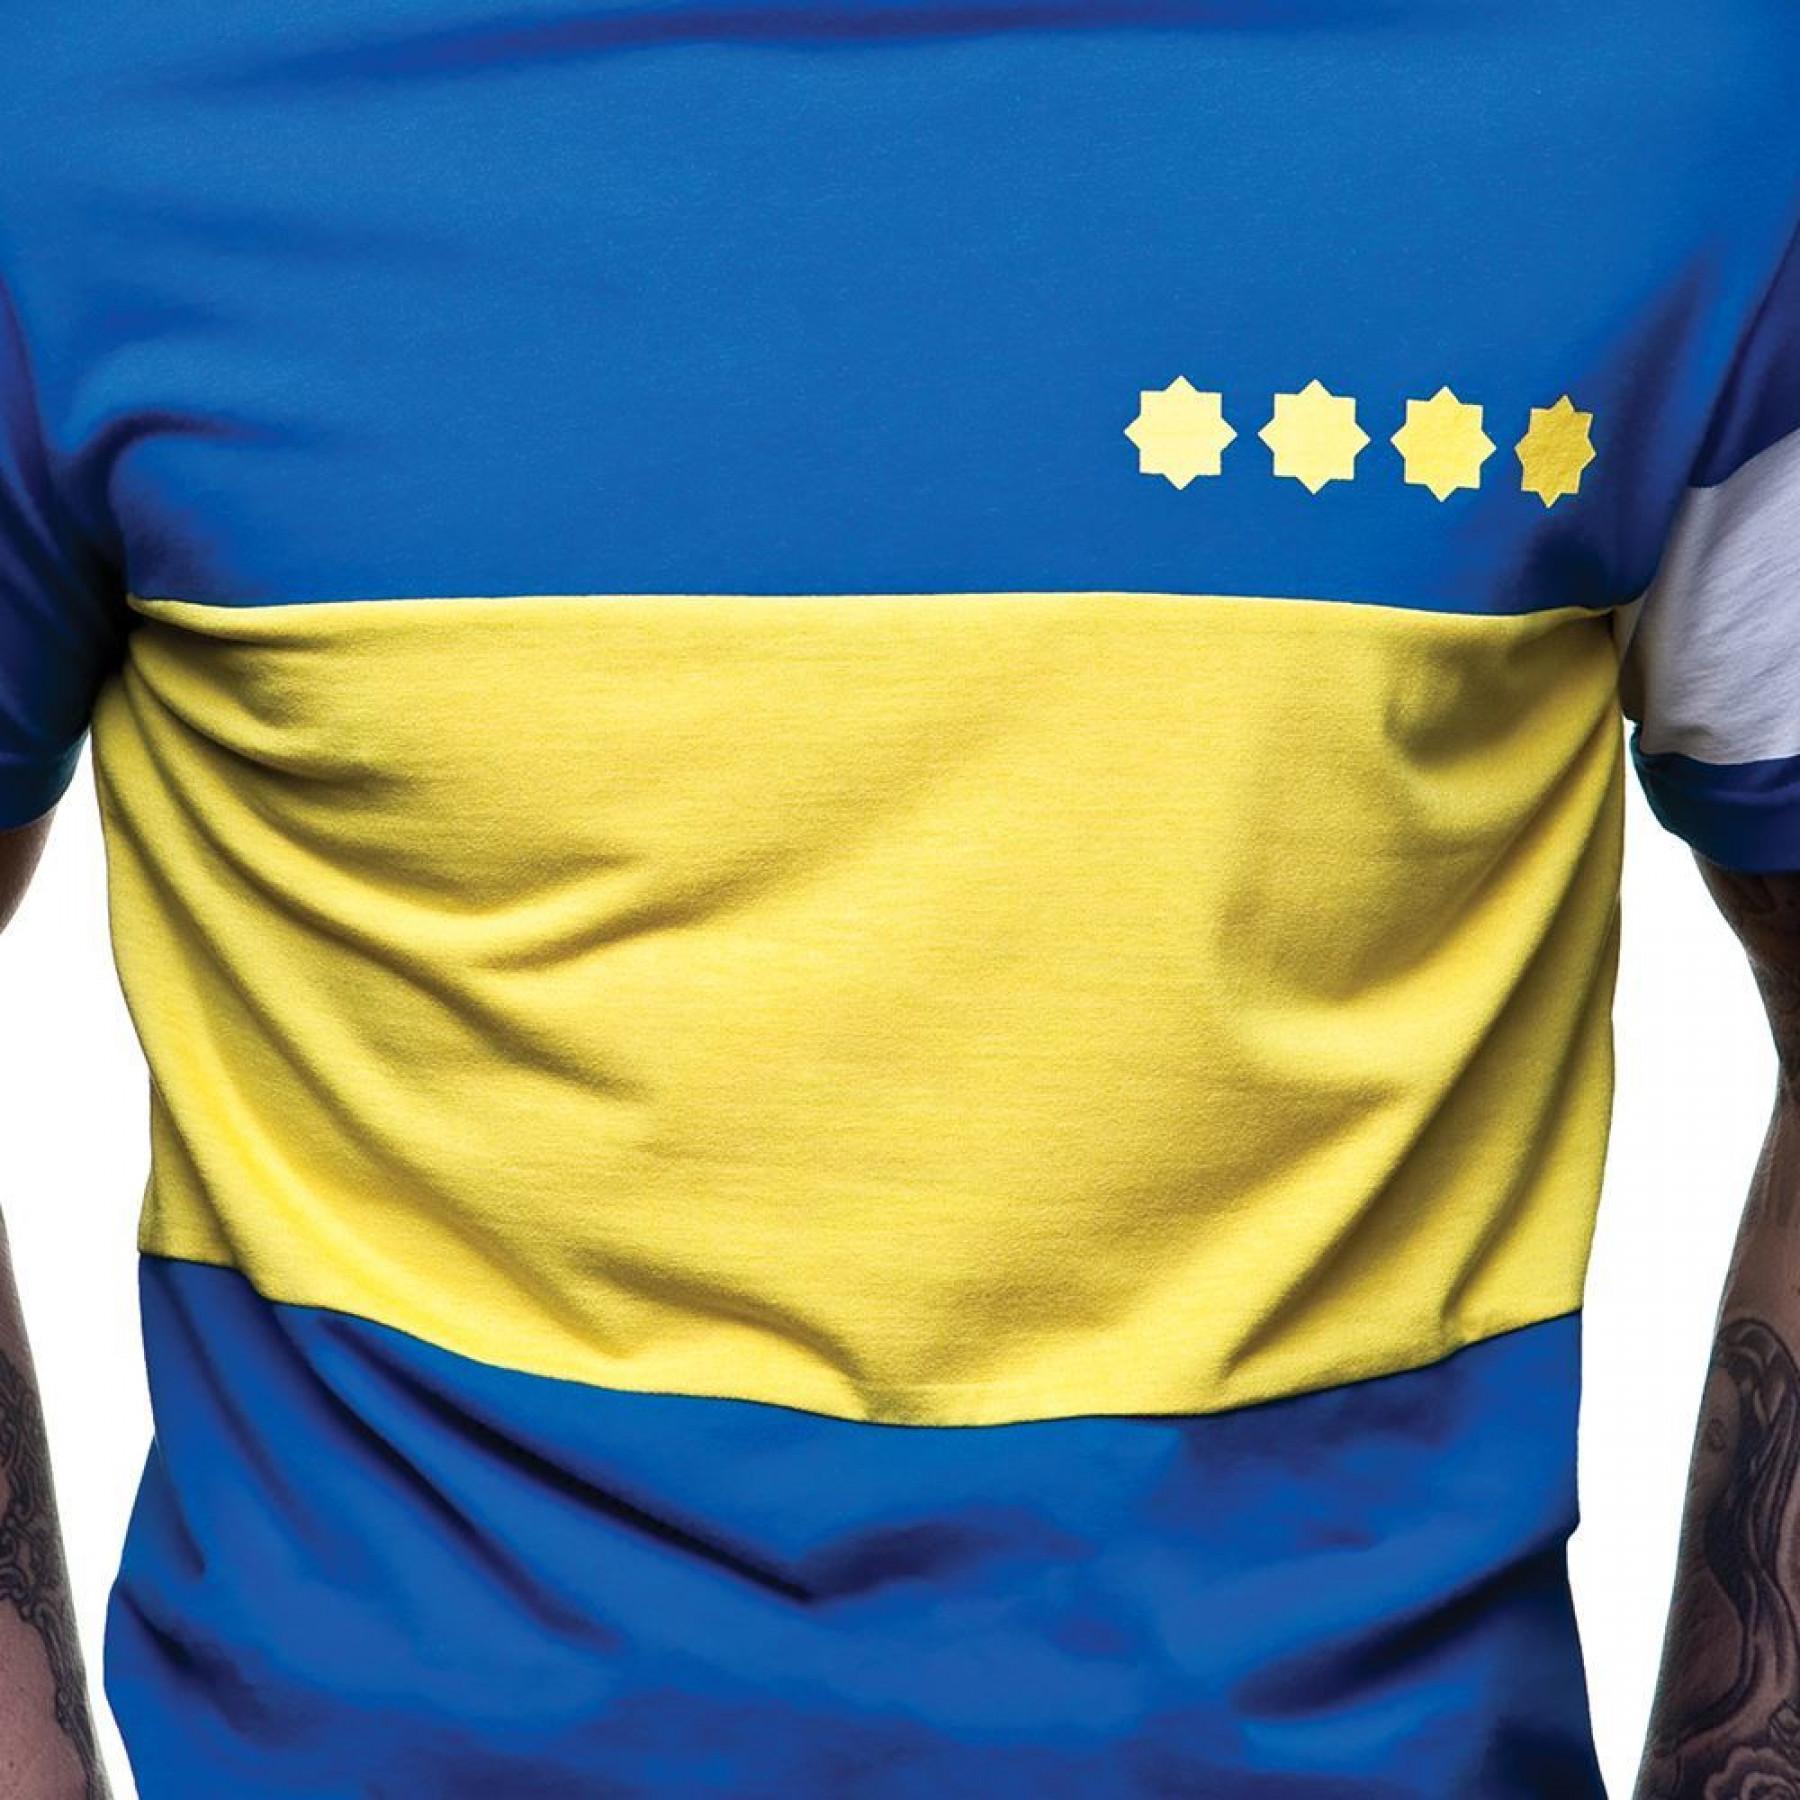 T-Shirt Copa Boca Juniors